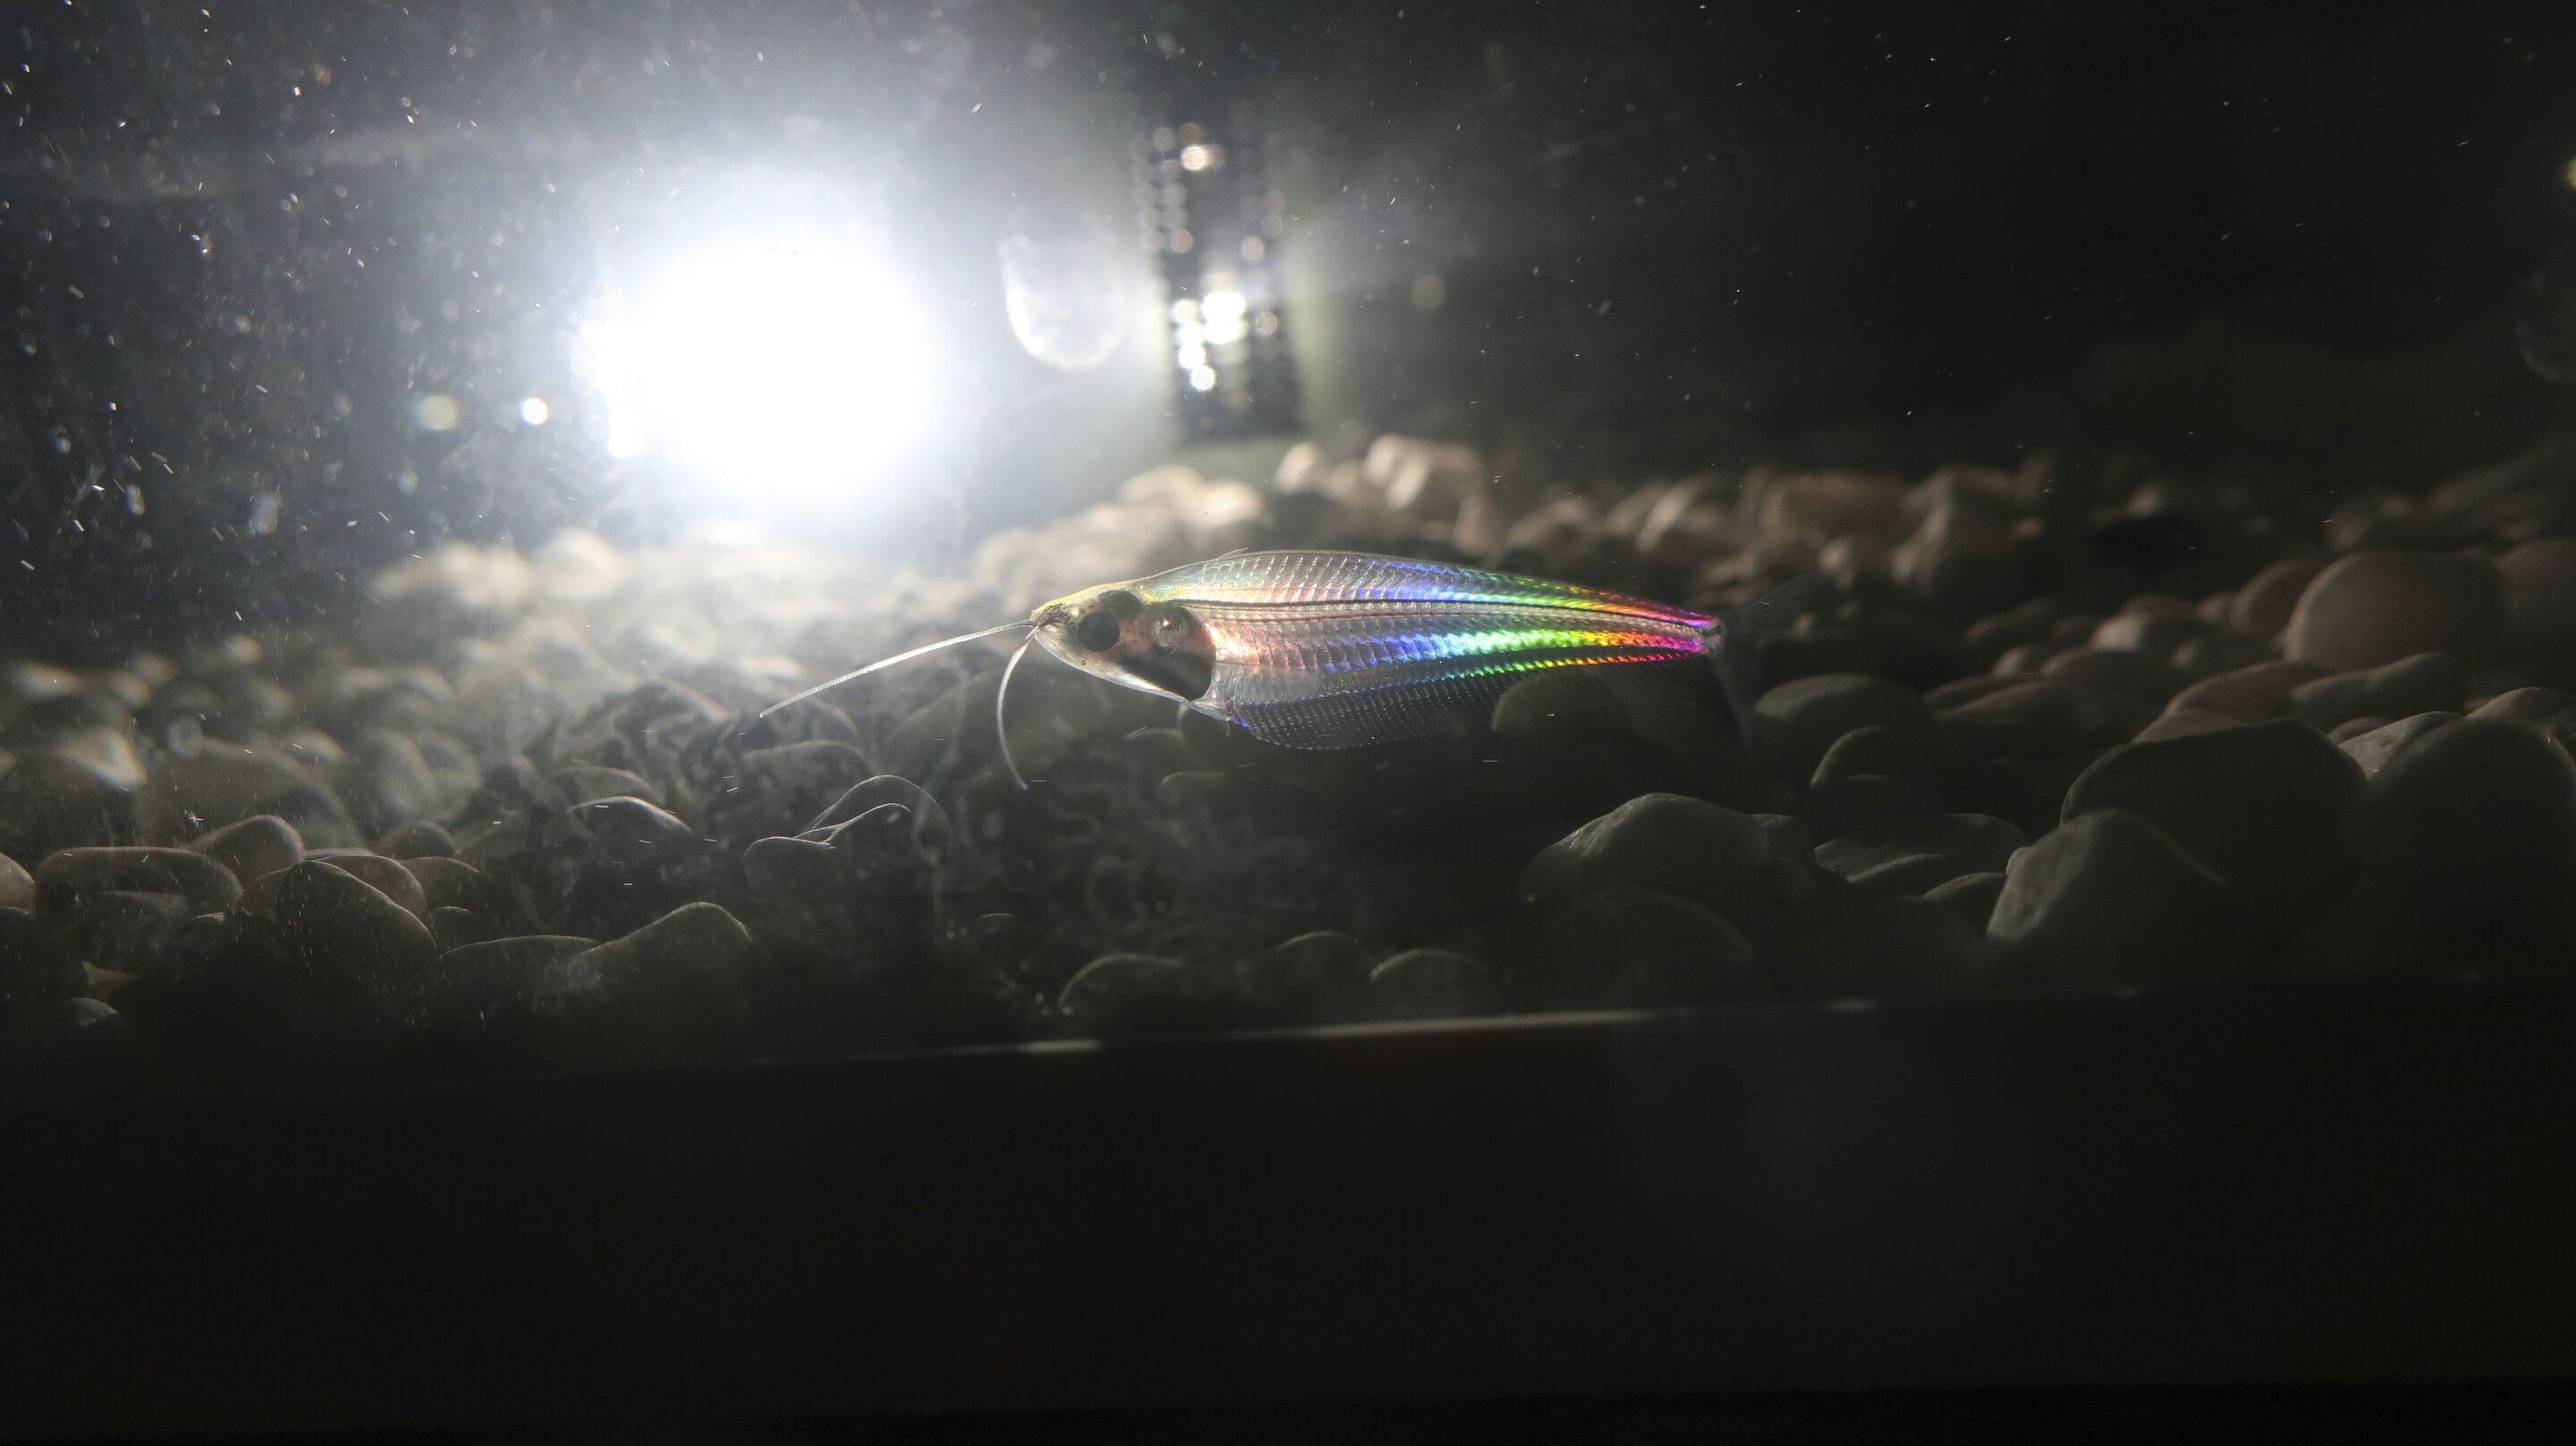 泰国的小观赏鱼幽灵鲶鱼（玻璃鲶鱼）是如何发出彩虹般光芒的